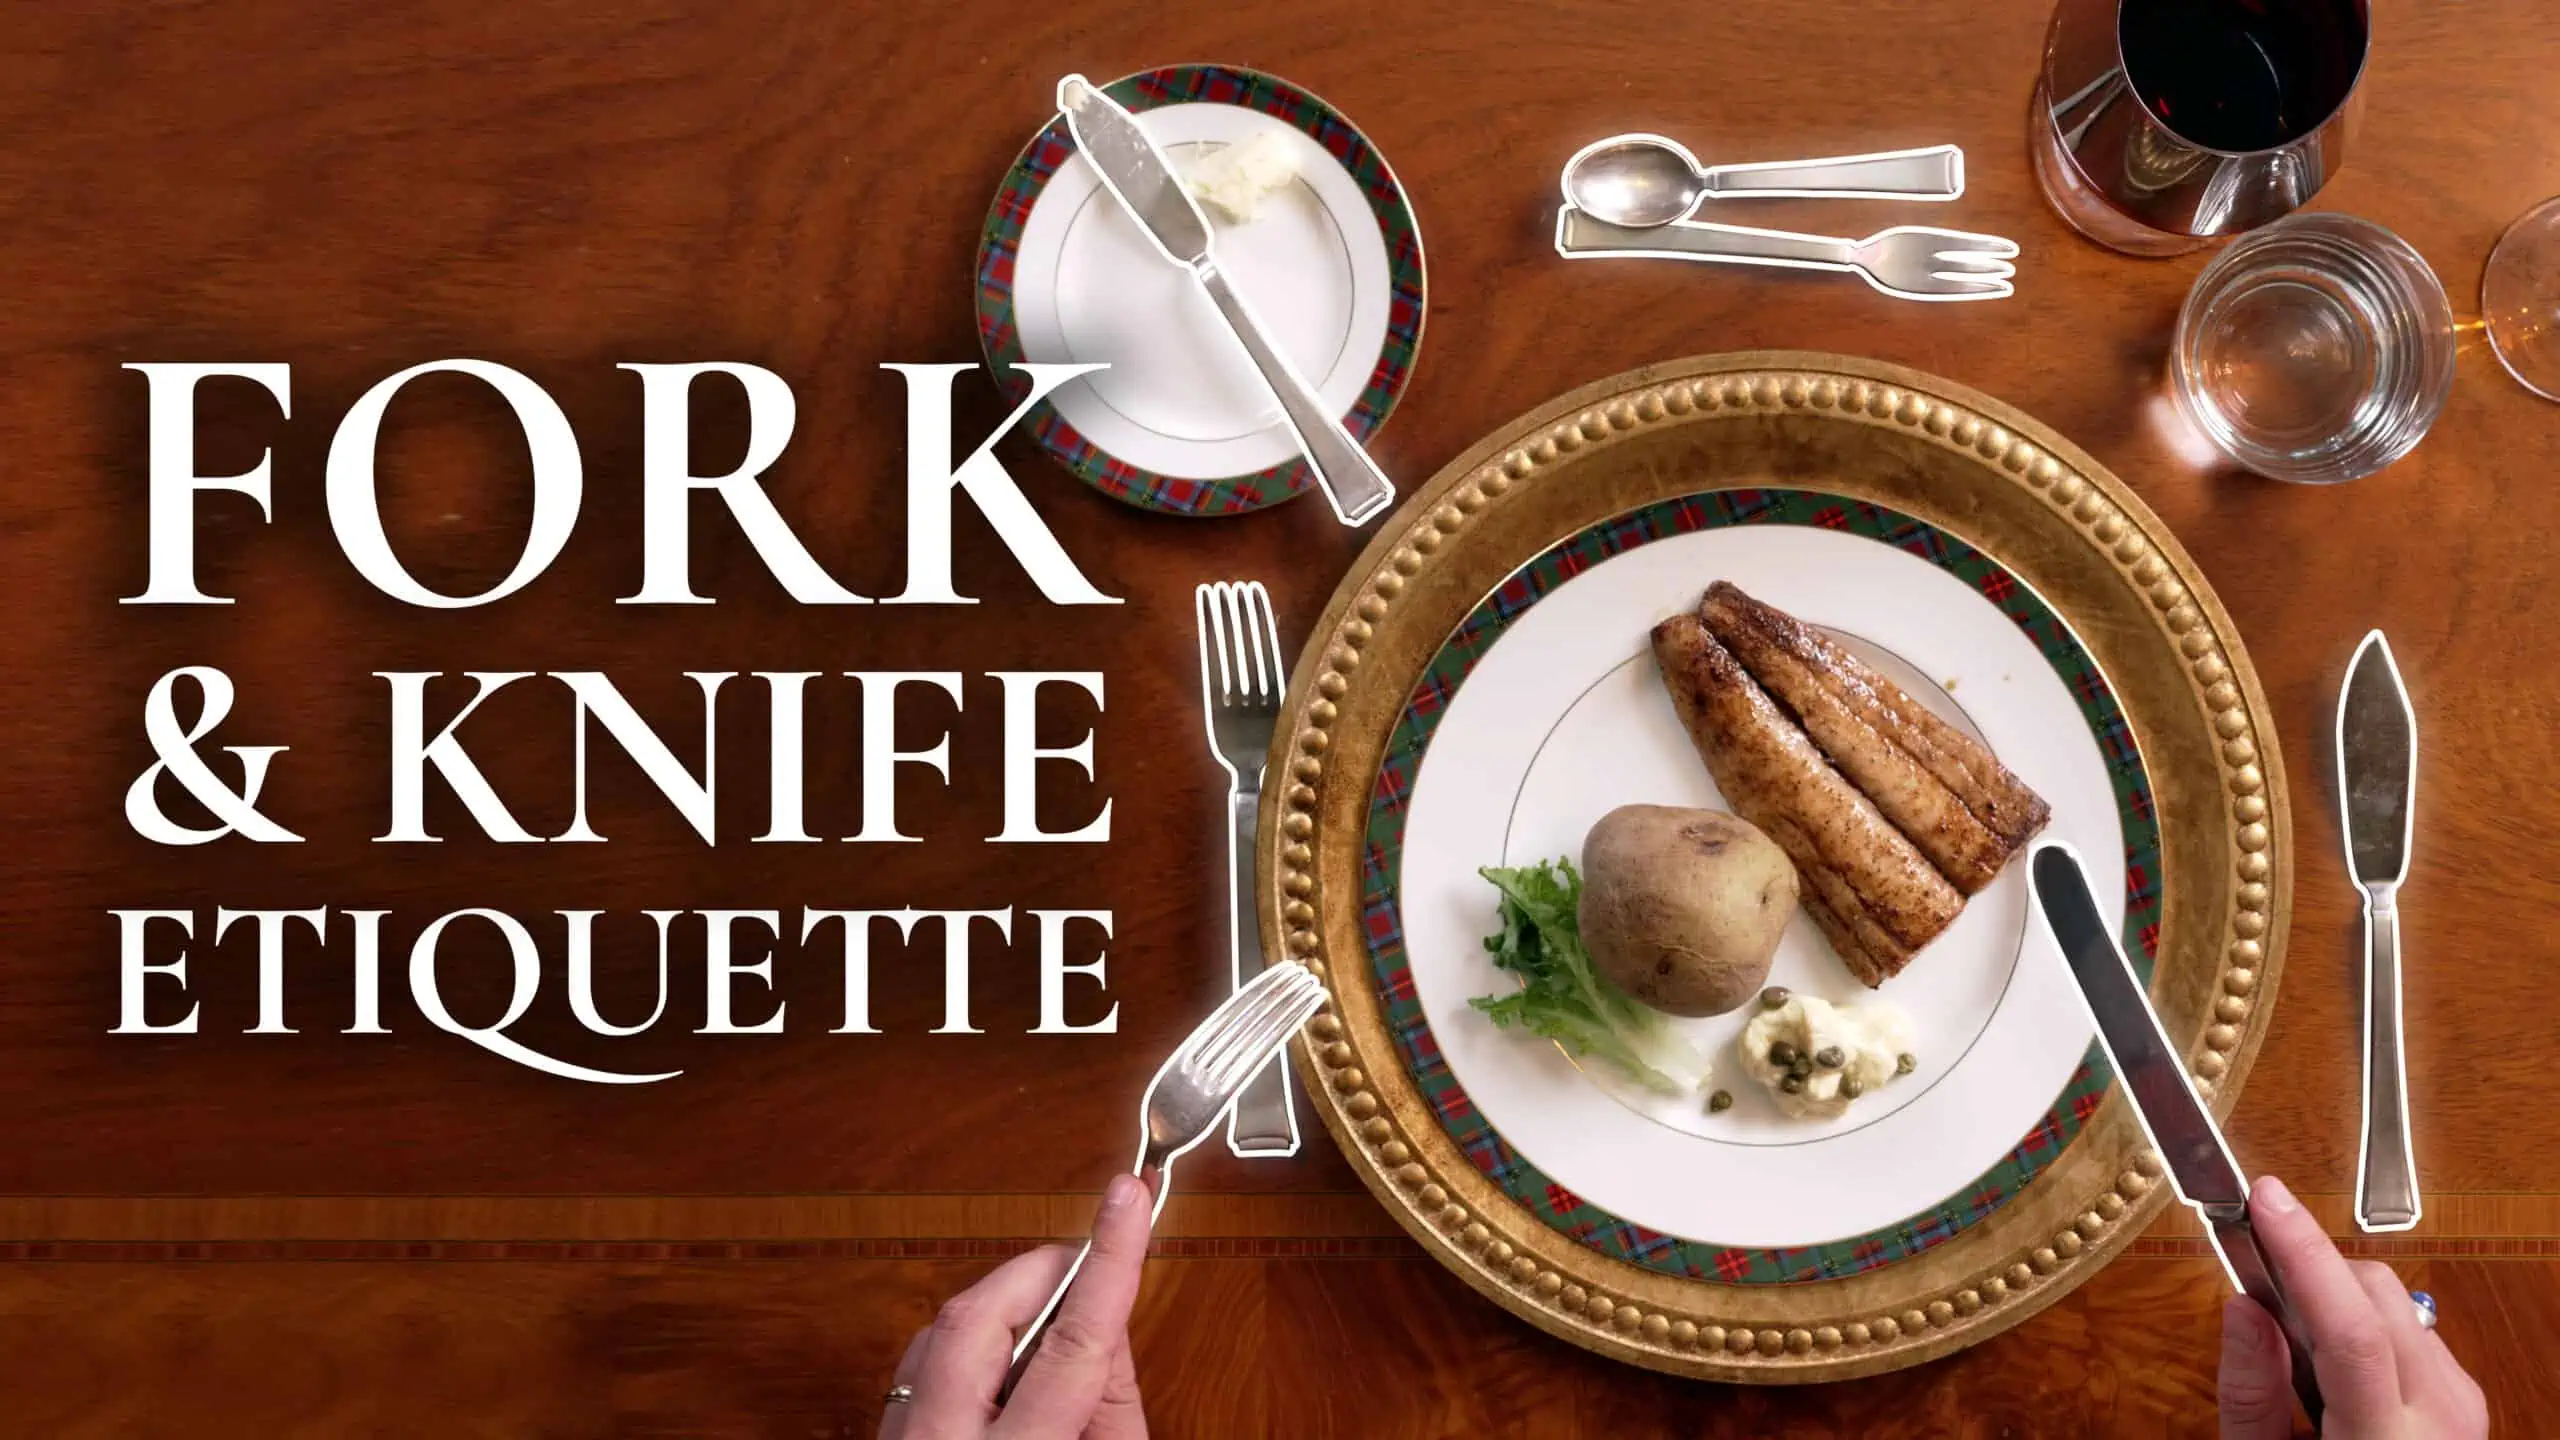 https://www.gentlemansgazette.com/wp-content/uploads/2023/05/fork-knife-etiquette_3840x2160-scaled.webp